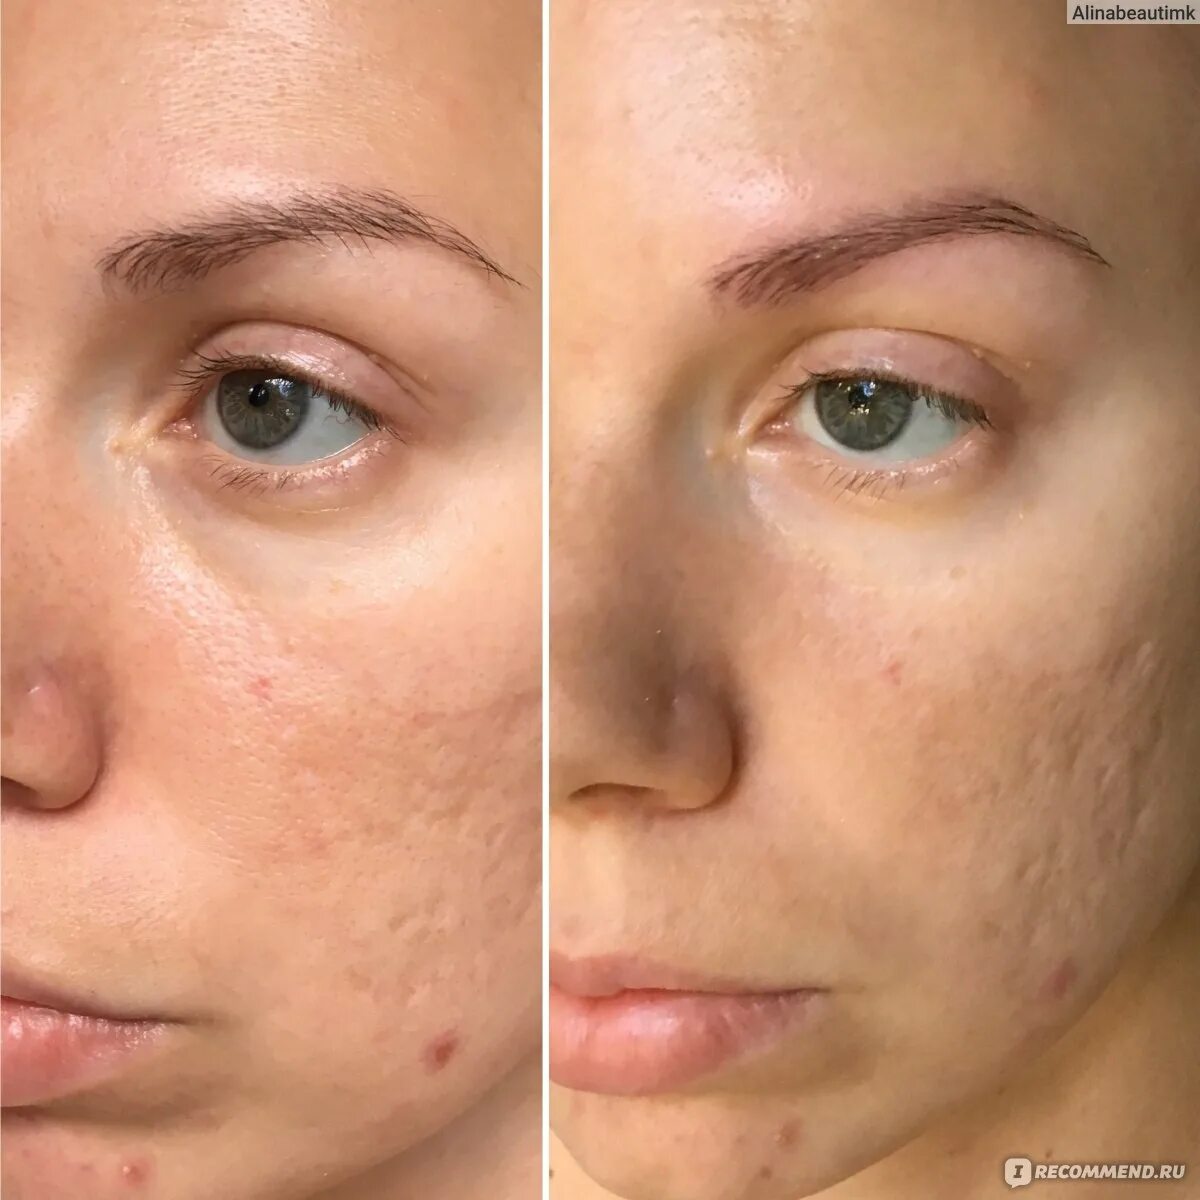 Альгинатная маска до и после. Альгинатная маска до и после фото. Альгинатная маска для лица эффект до и после применения. Результат альгинатная макси до и после лицо 10 применений.